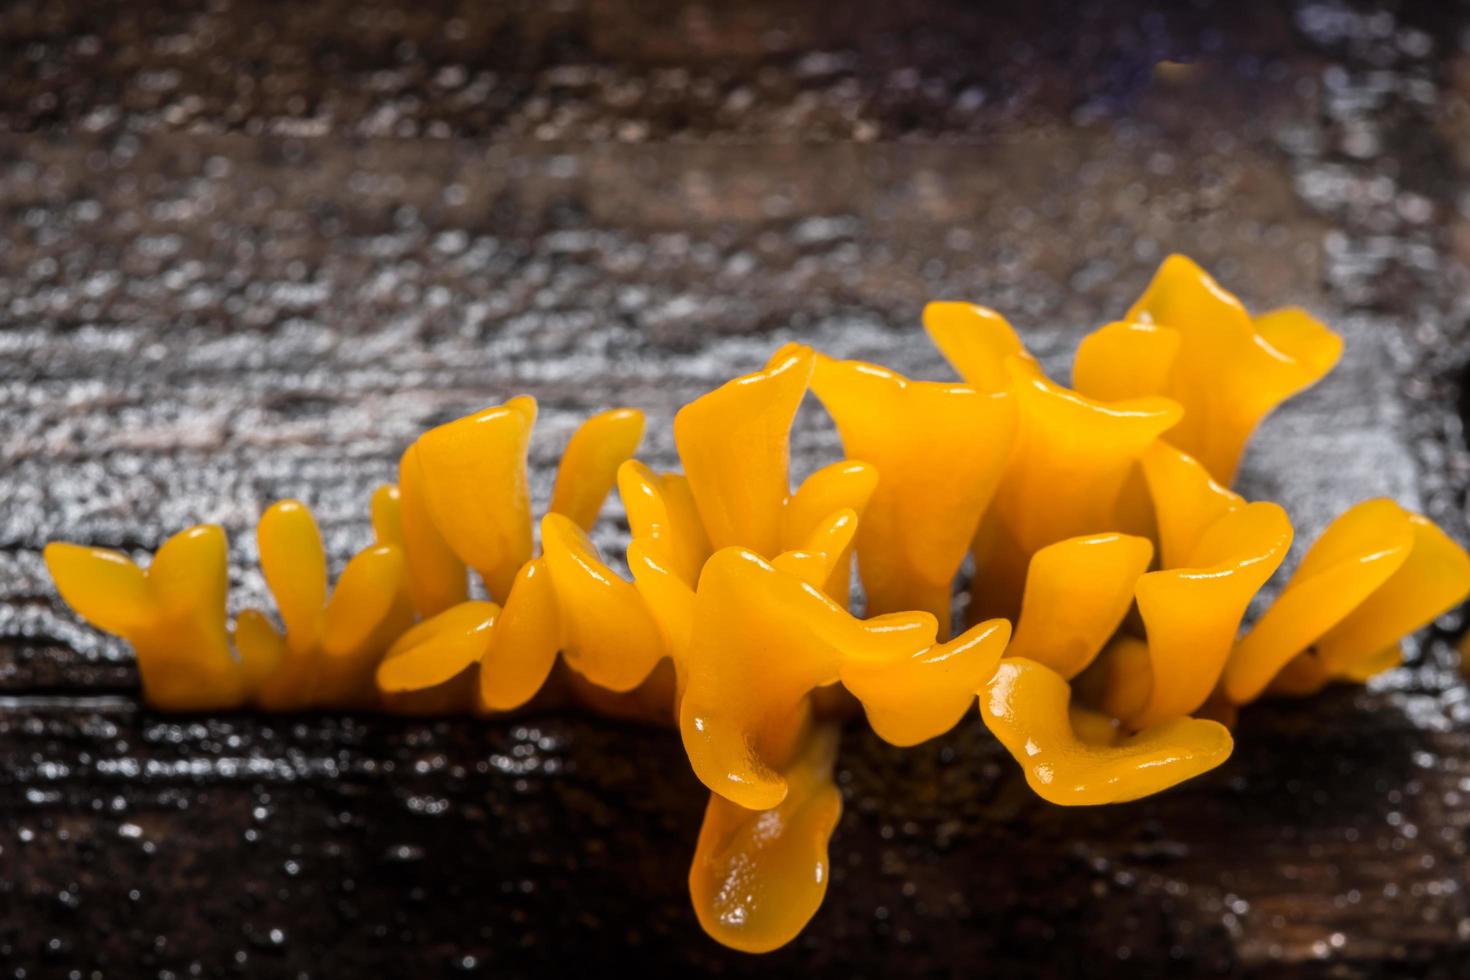 Orange mushrooms close-up photo